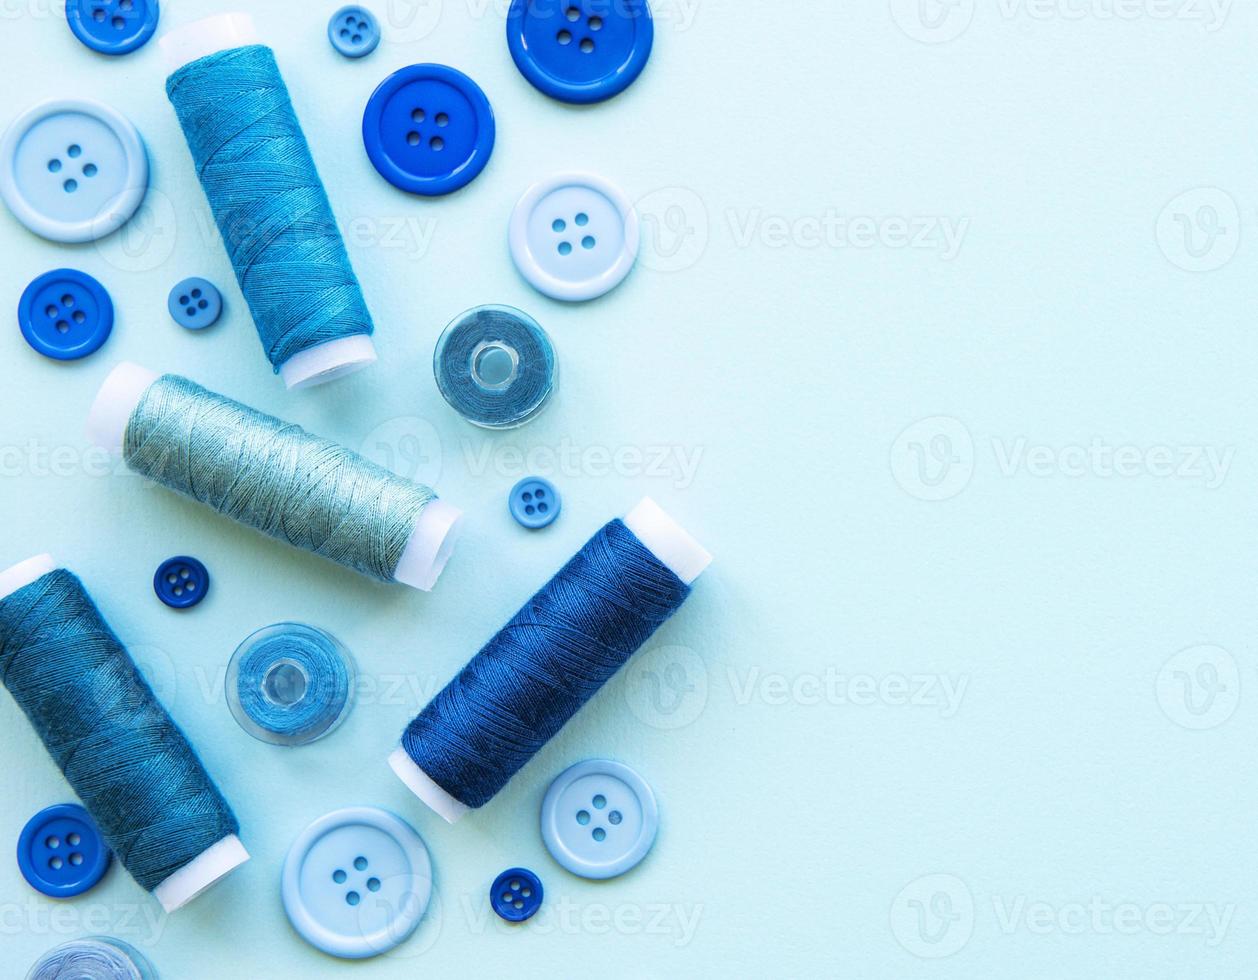 klosjes draad en knopen in blauwe tinten op een blauwe achtergrond foto